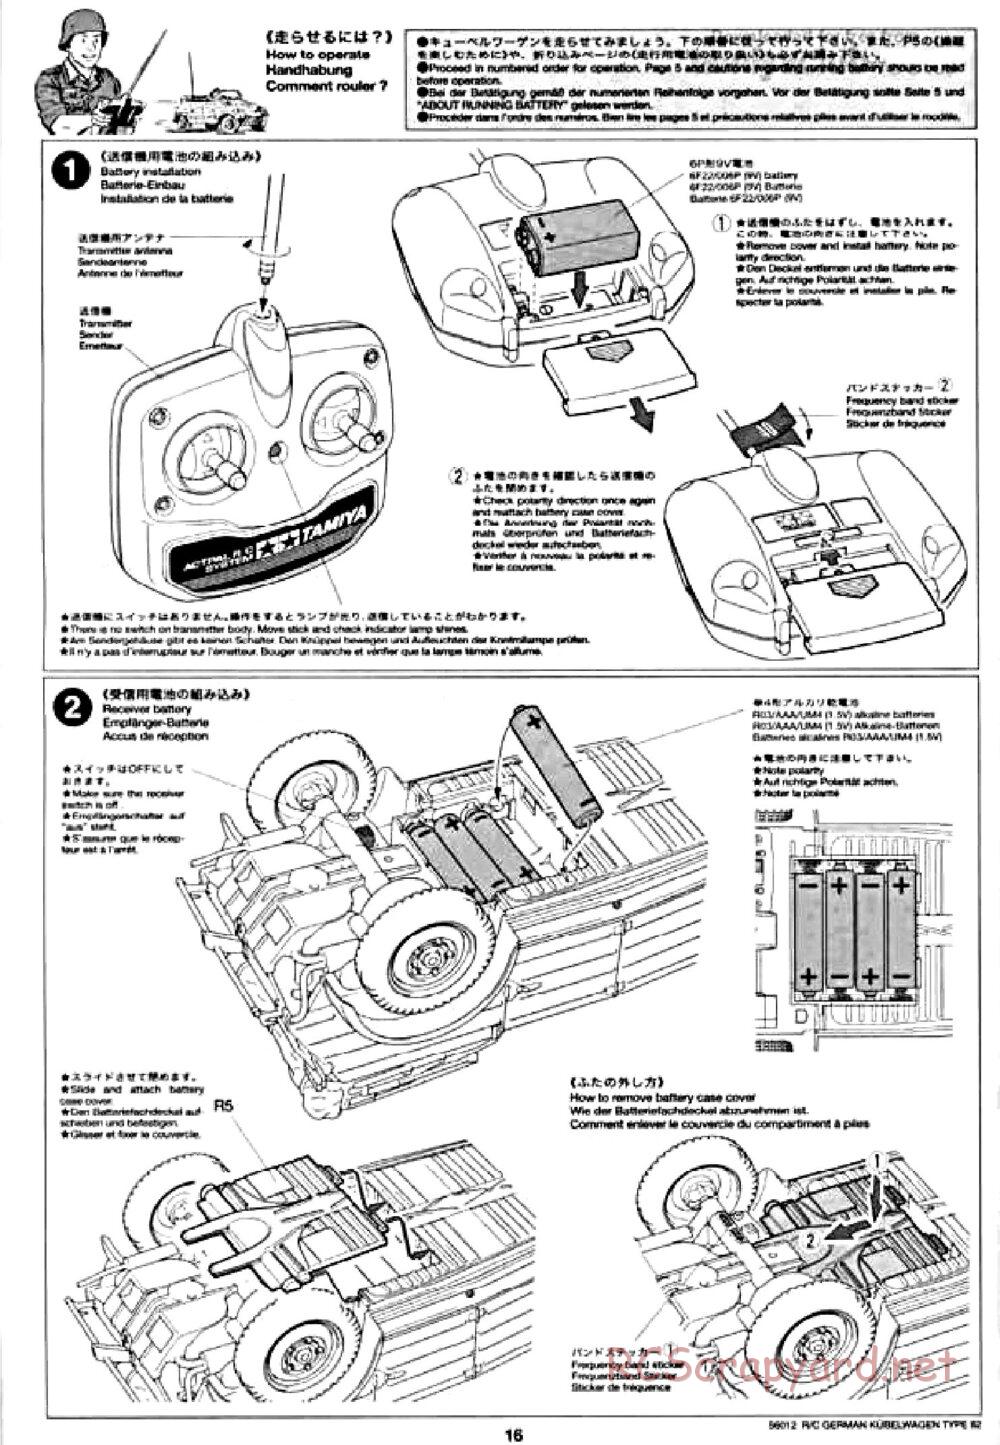 Tamiya - Kubelwagen Type 82 Chassis - Manual - Page 16